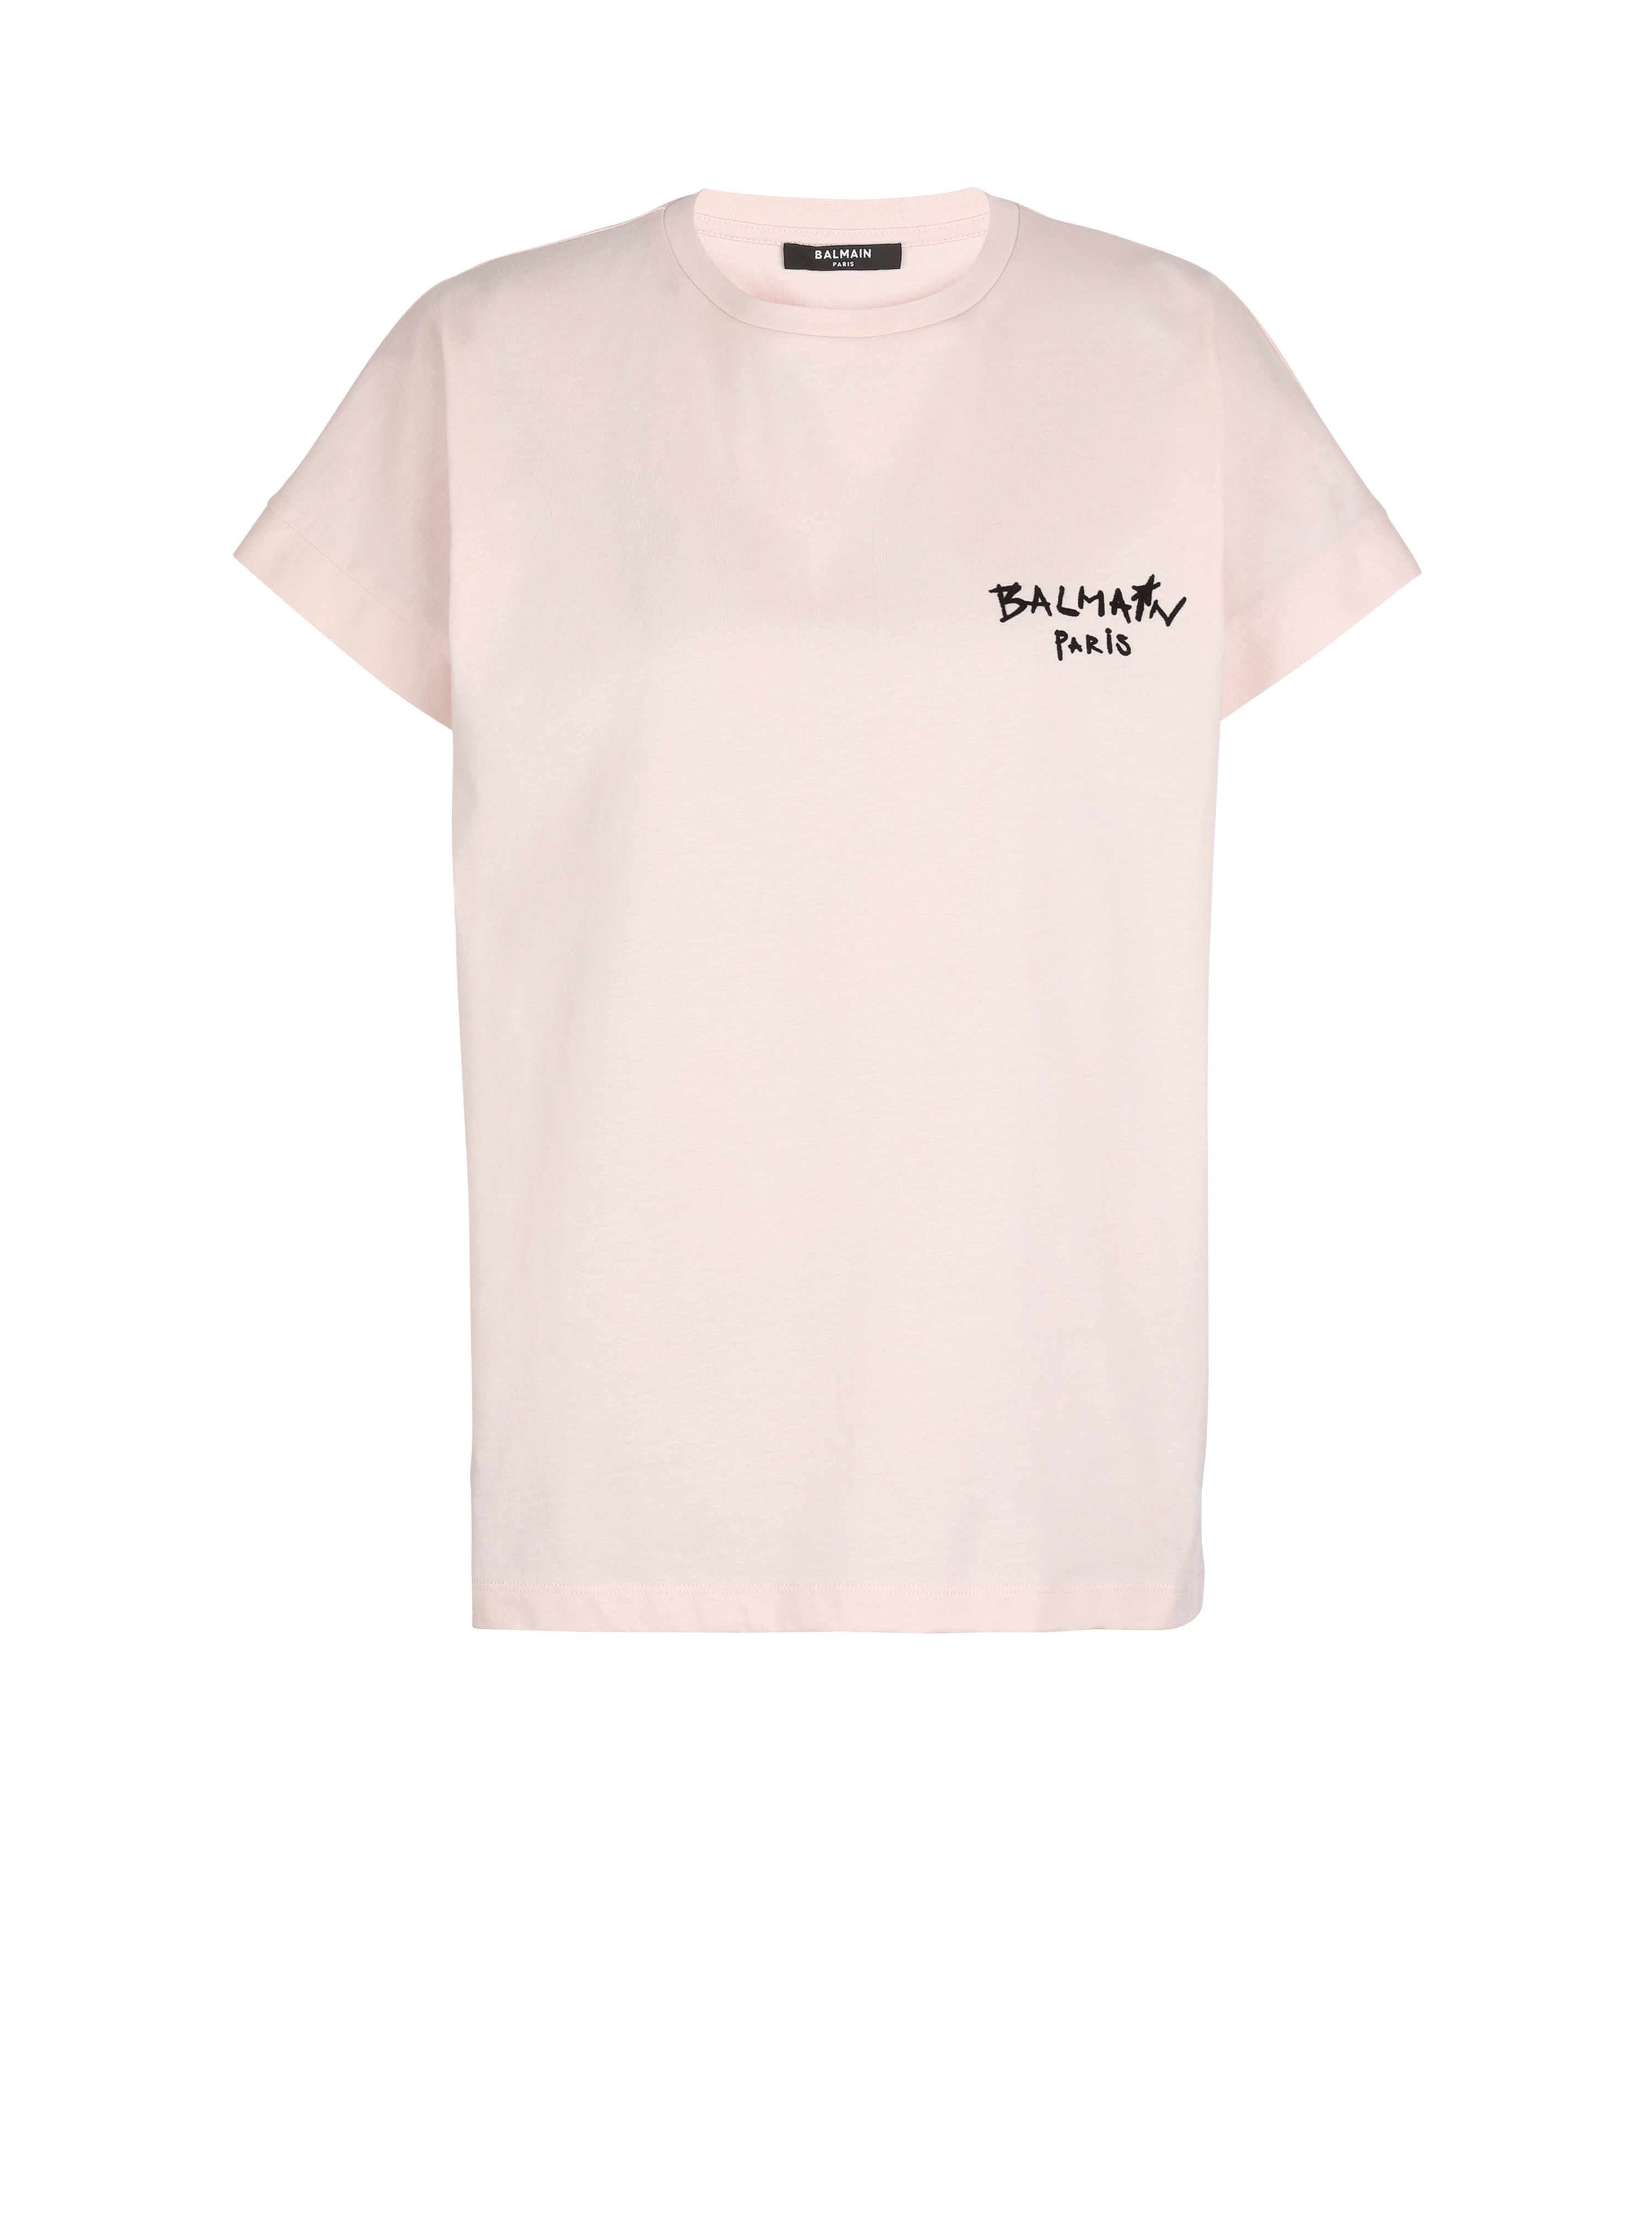 T-shirt in cotone con piccolo logo Balmain graffiti floccato, rosa